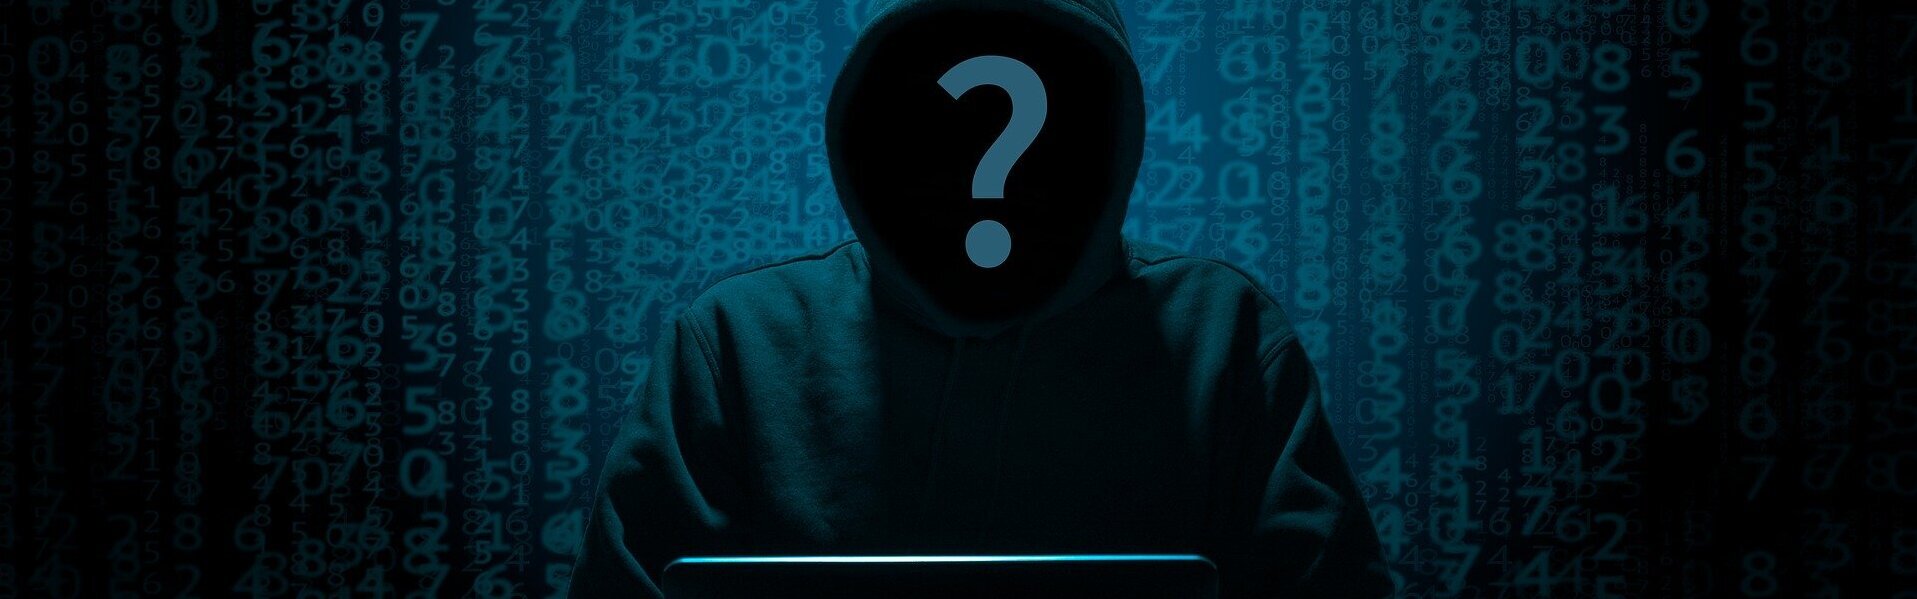 Das Bild zeigt die Silhouette eines Hackers vor einem Laptop. Die Person ist nicht zu erkennen. Auf ihrem Gesicht befindet sich ein Fragezeichen.